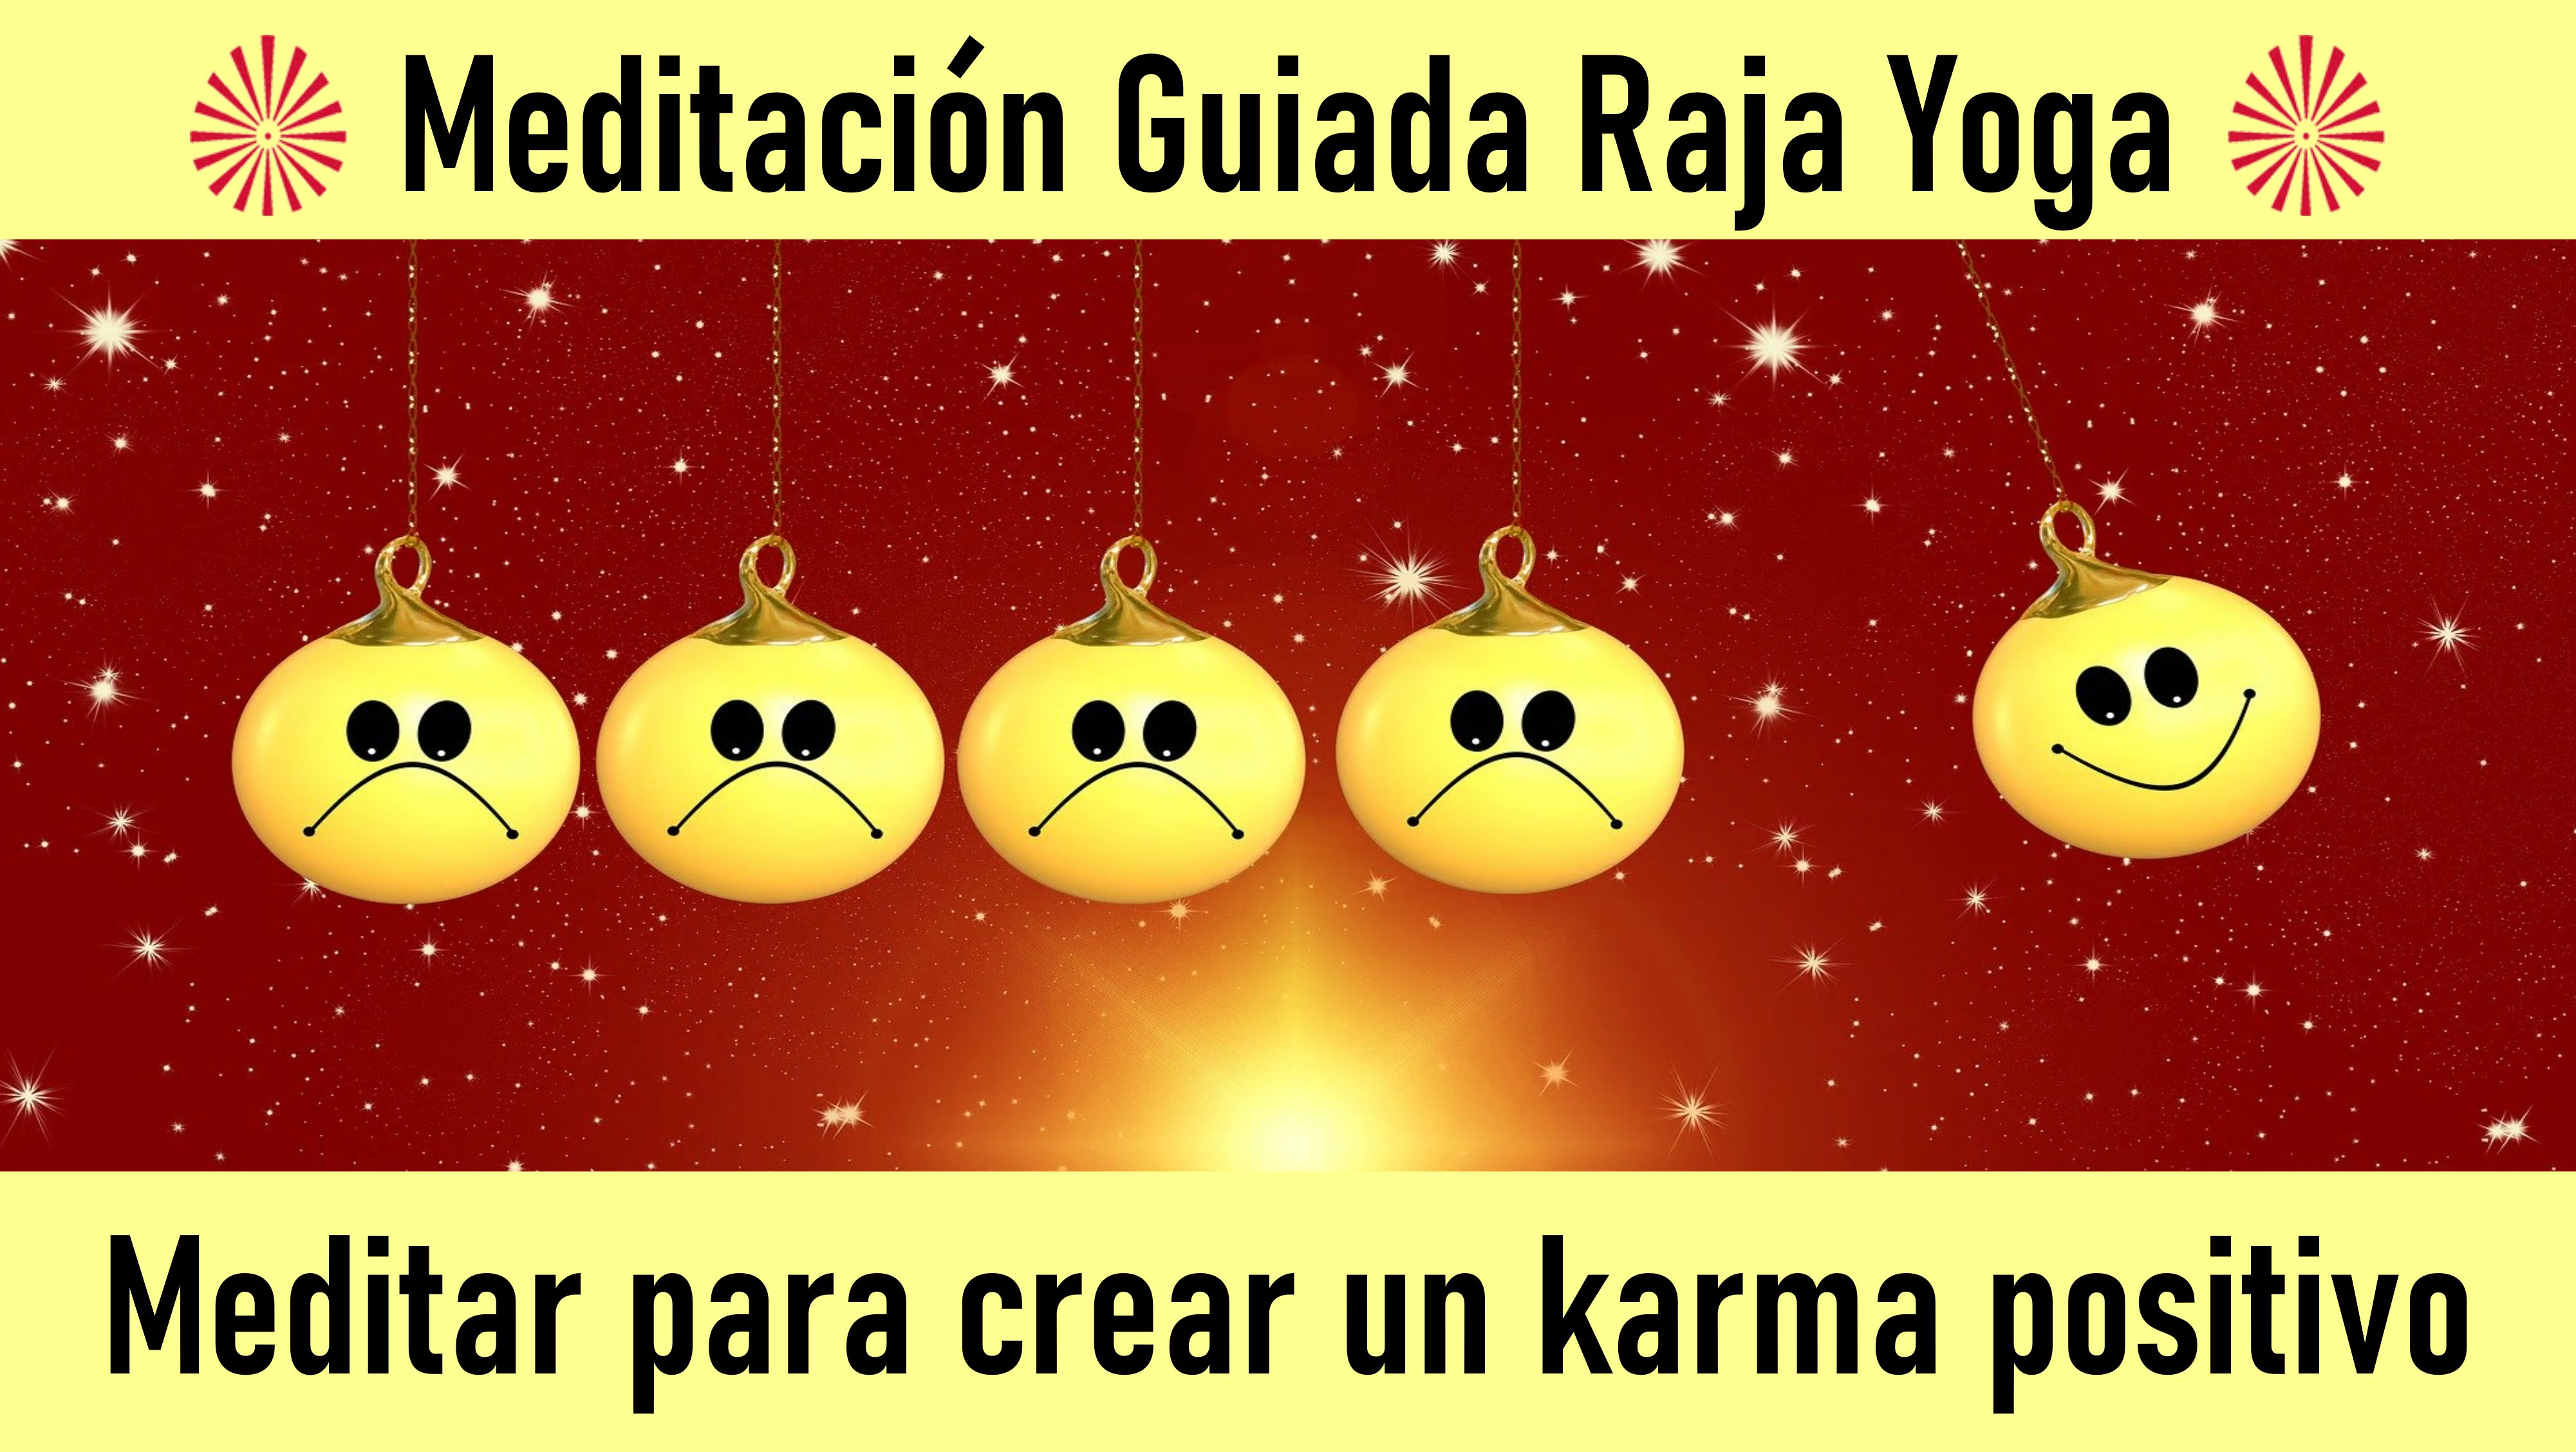 Meditación Raja Yoga: Meditar para crear un karma positivo (15 Julio 2020) On-line desde Sevilla